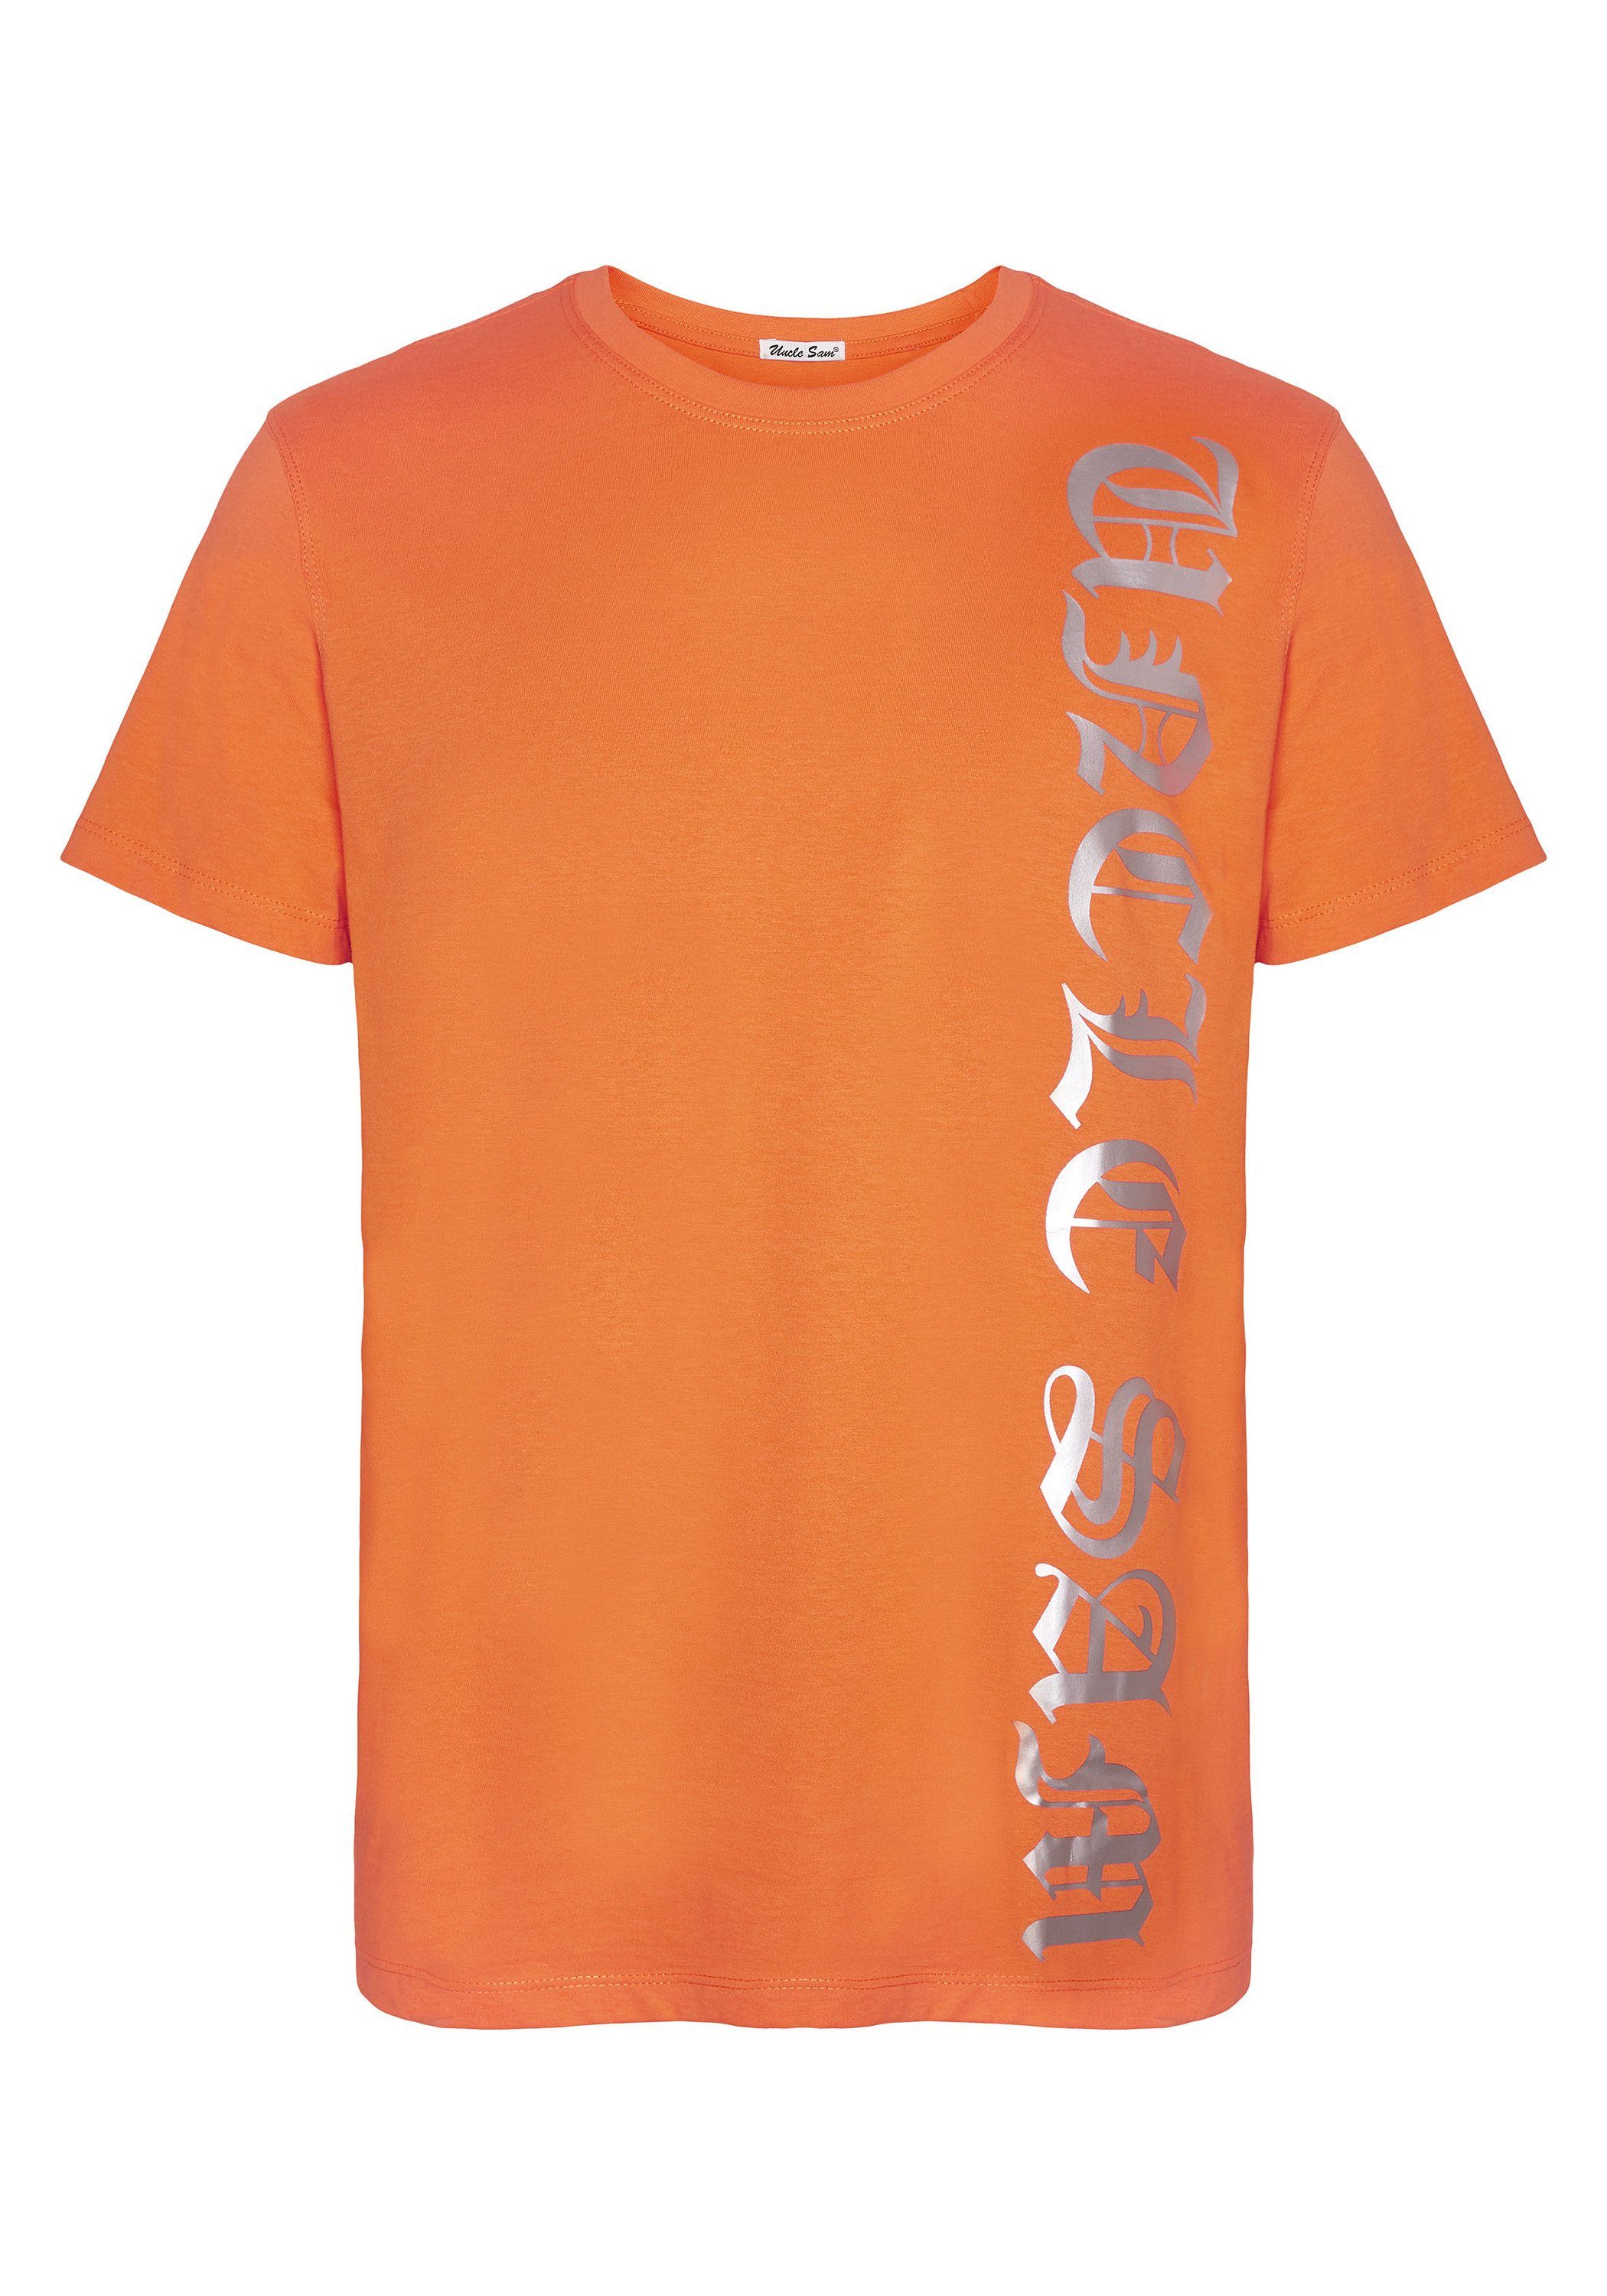 Uncle Sam Print-Shirt mit seitlichem Uncle Sam Logoprint 16-1362 Vermillon Orange